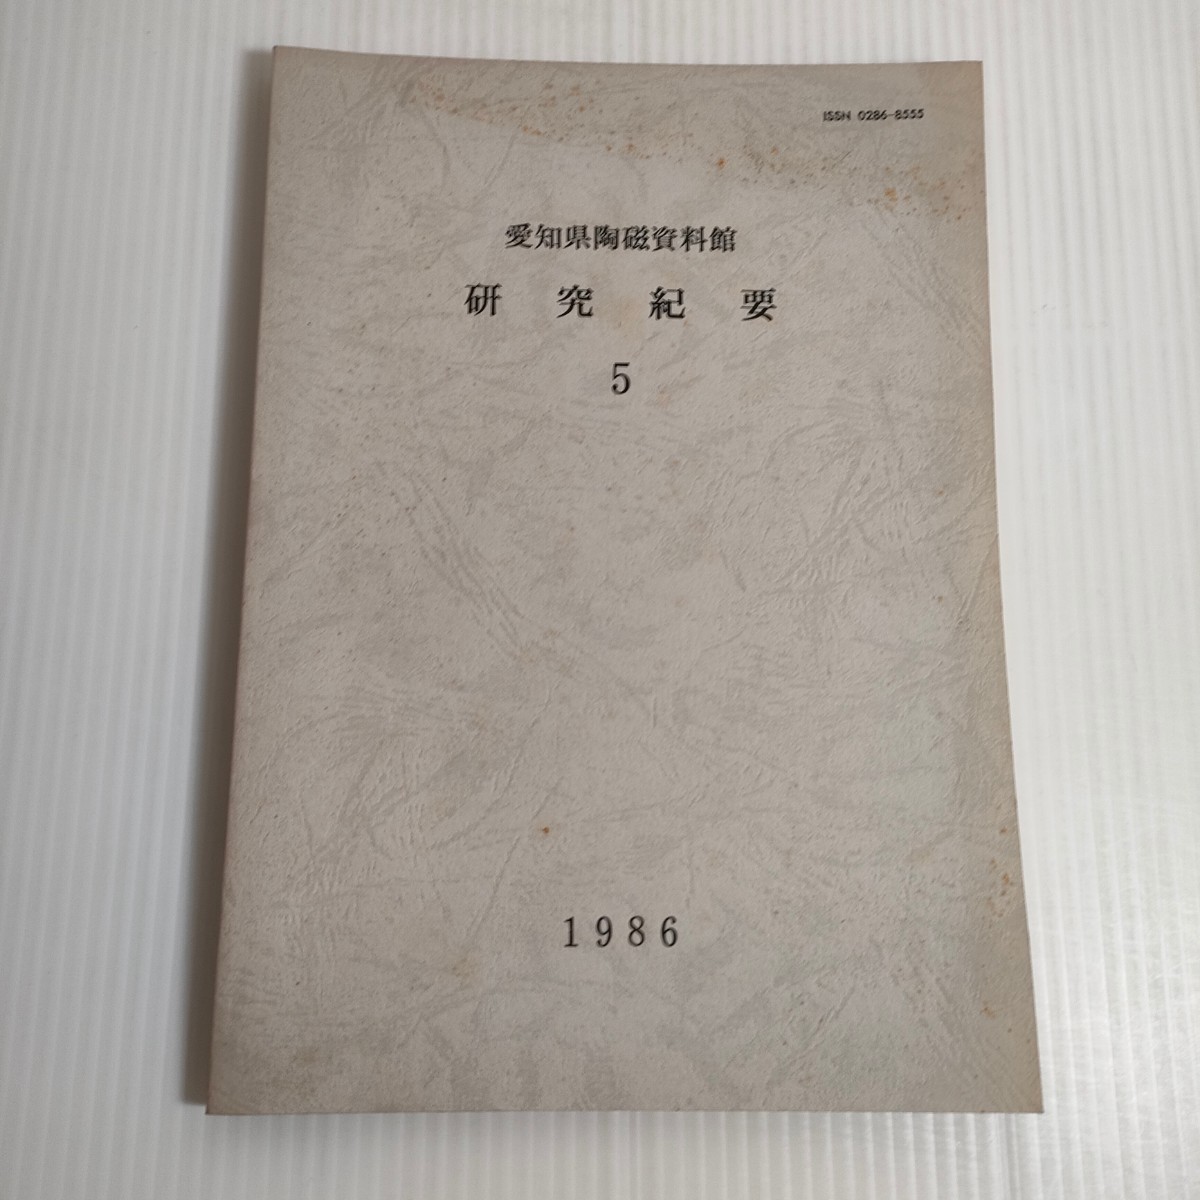 460 愛知県陶磁資料館 研究紀要 5 1986_画像1